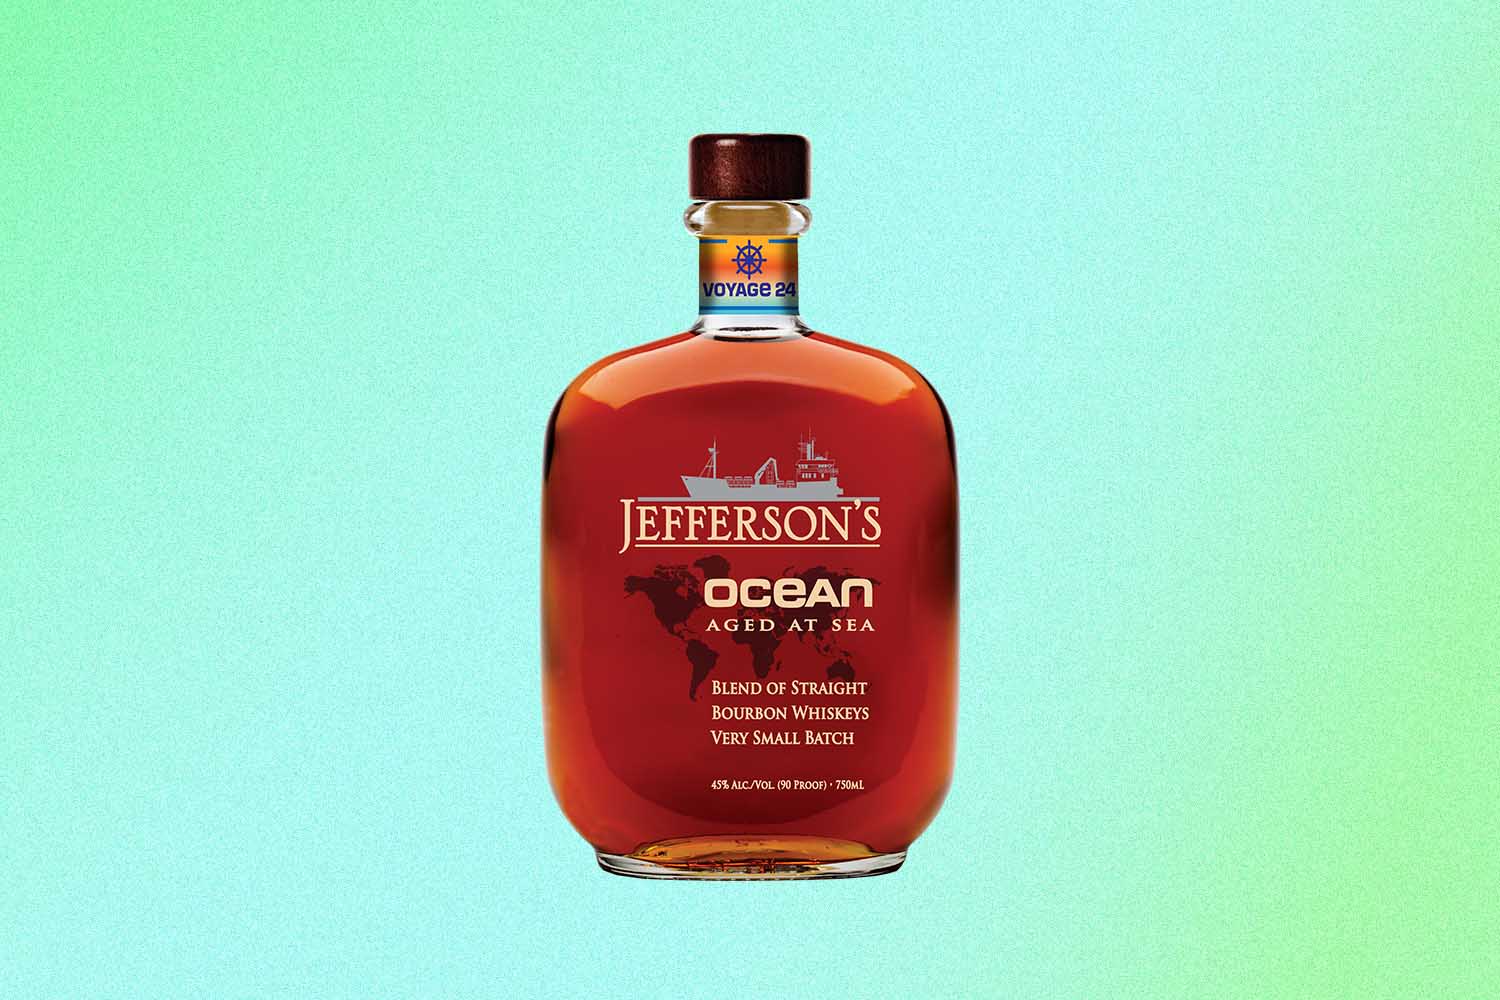 Jefferson's Ocean Aged at Sea 24 bottle